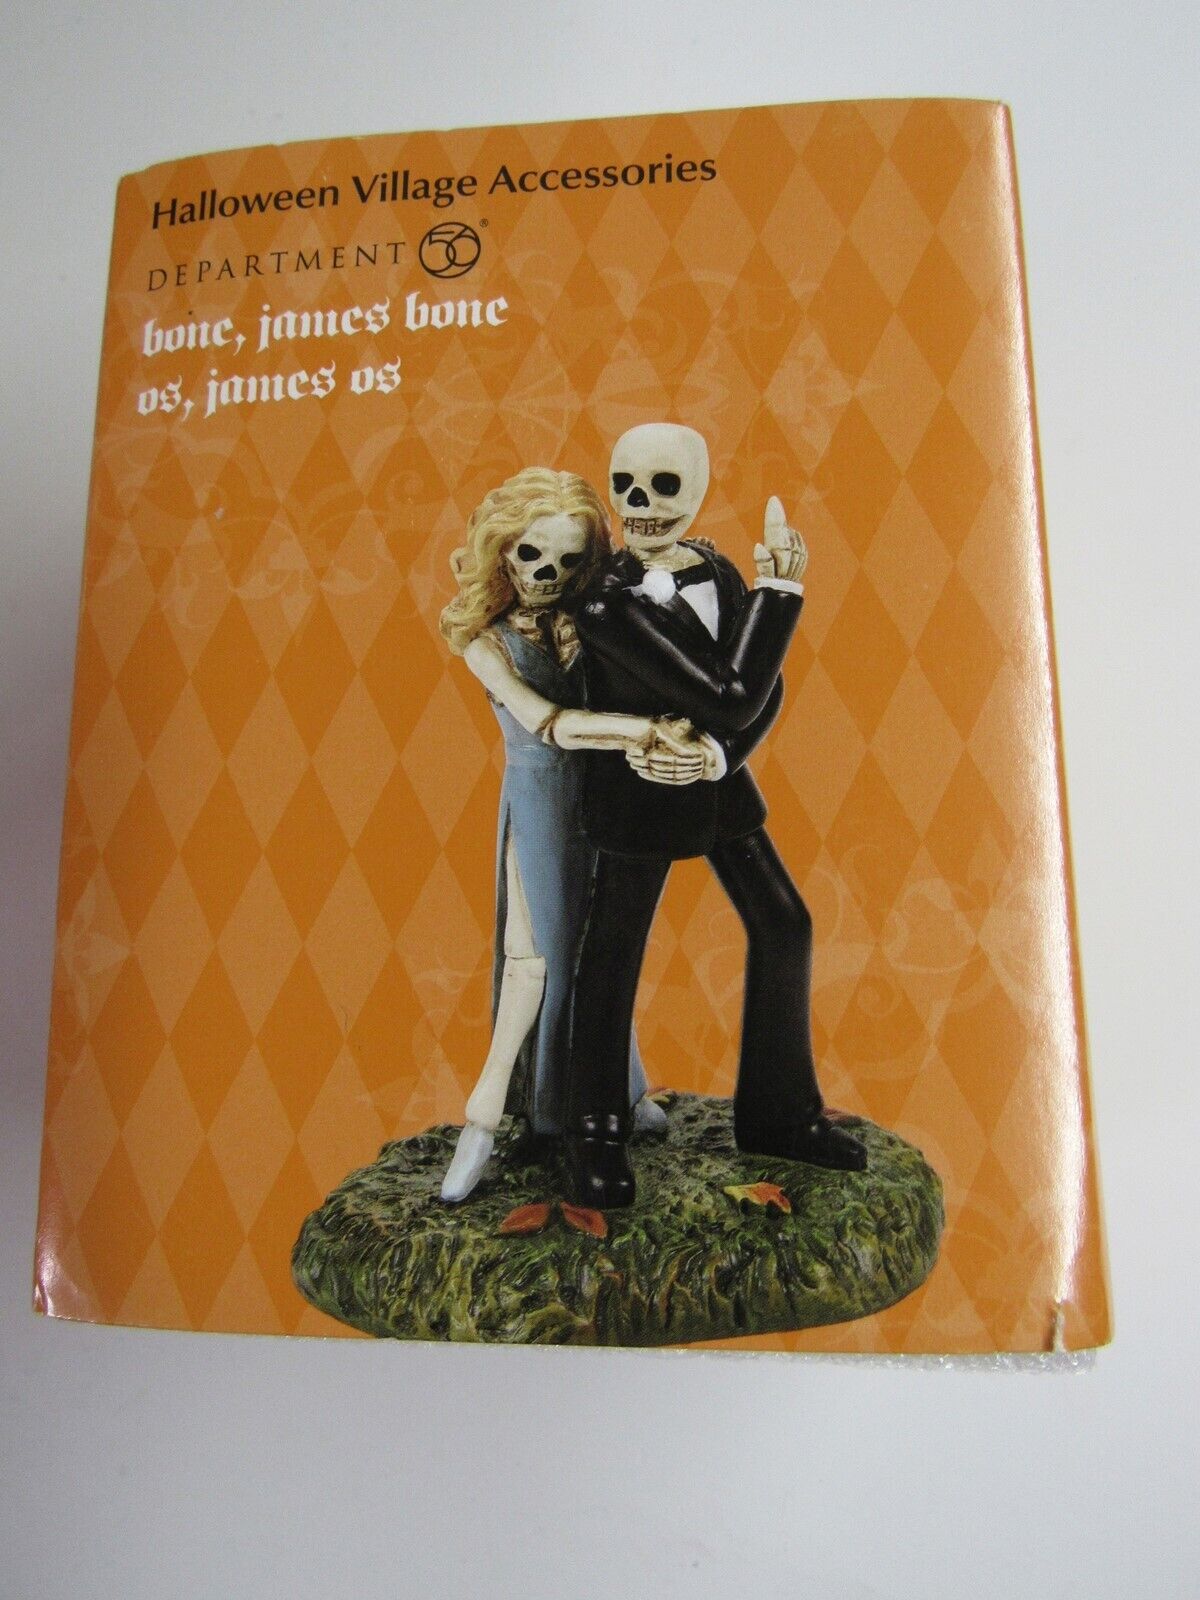 Dept 56 Halloween Village Accessories Bone, James Bone Figurine 6009816 MIP